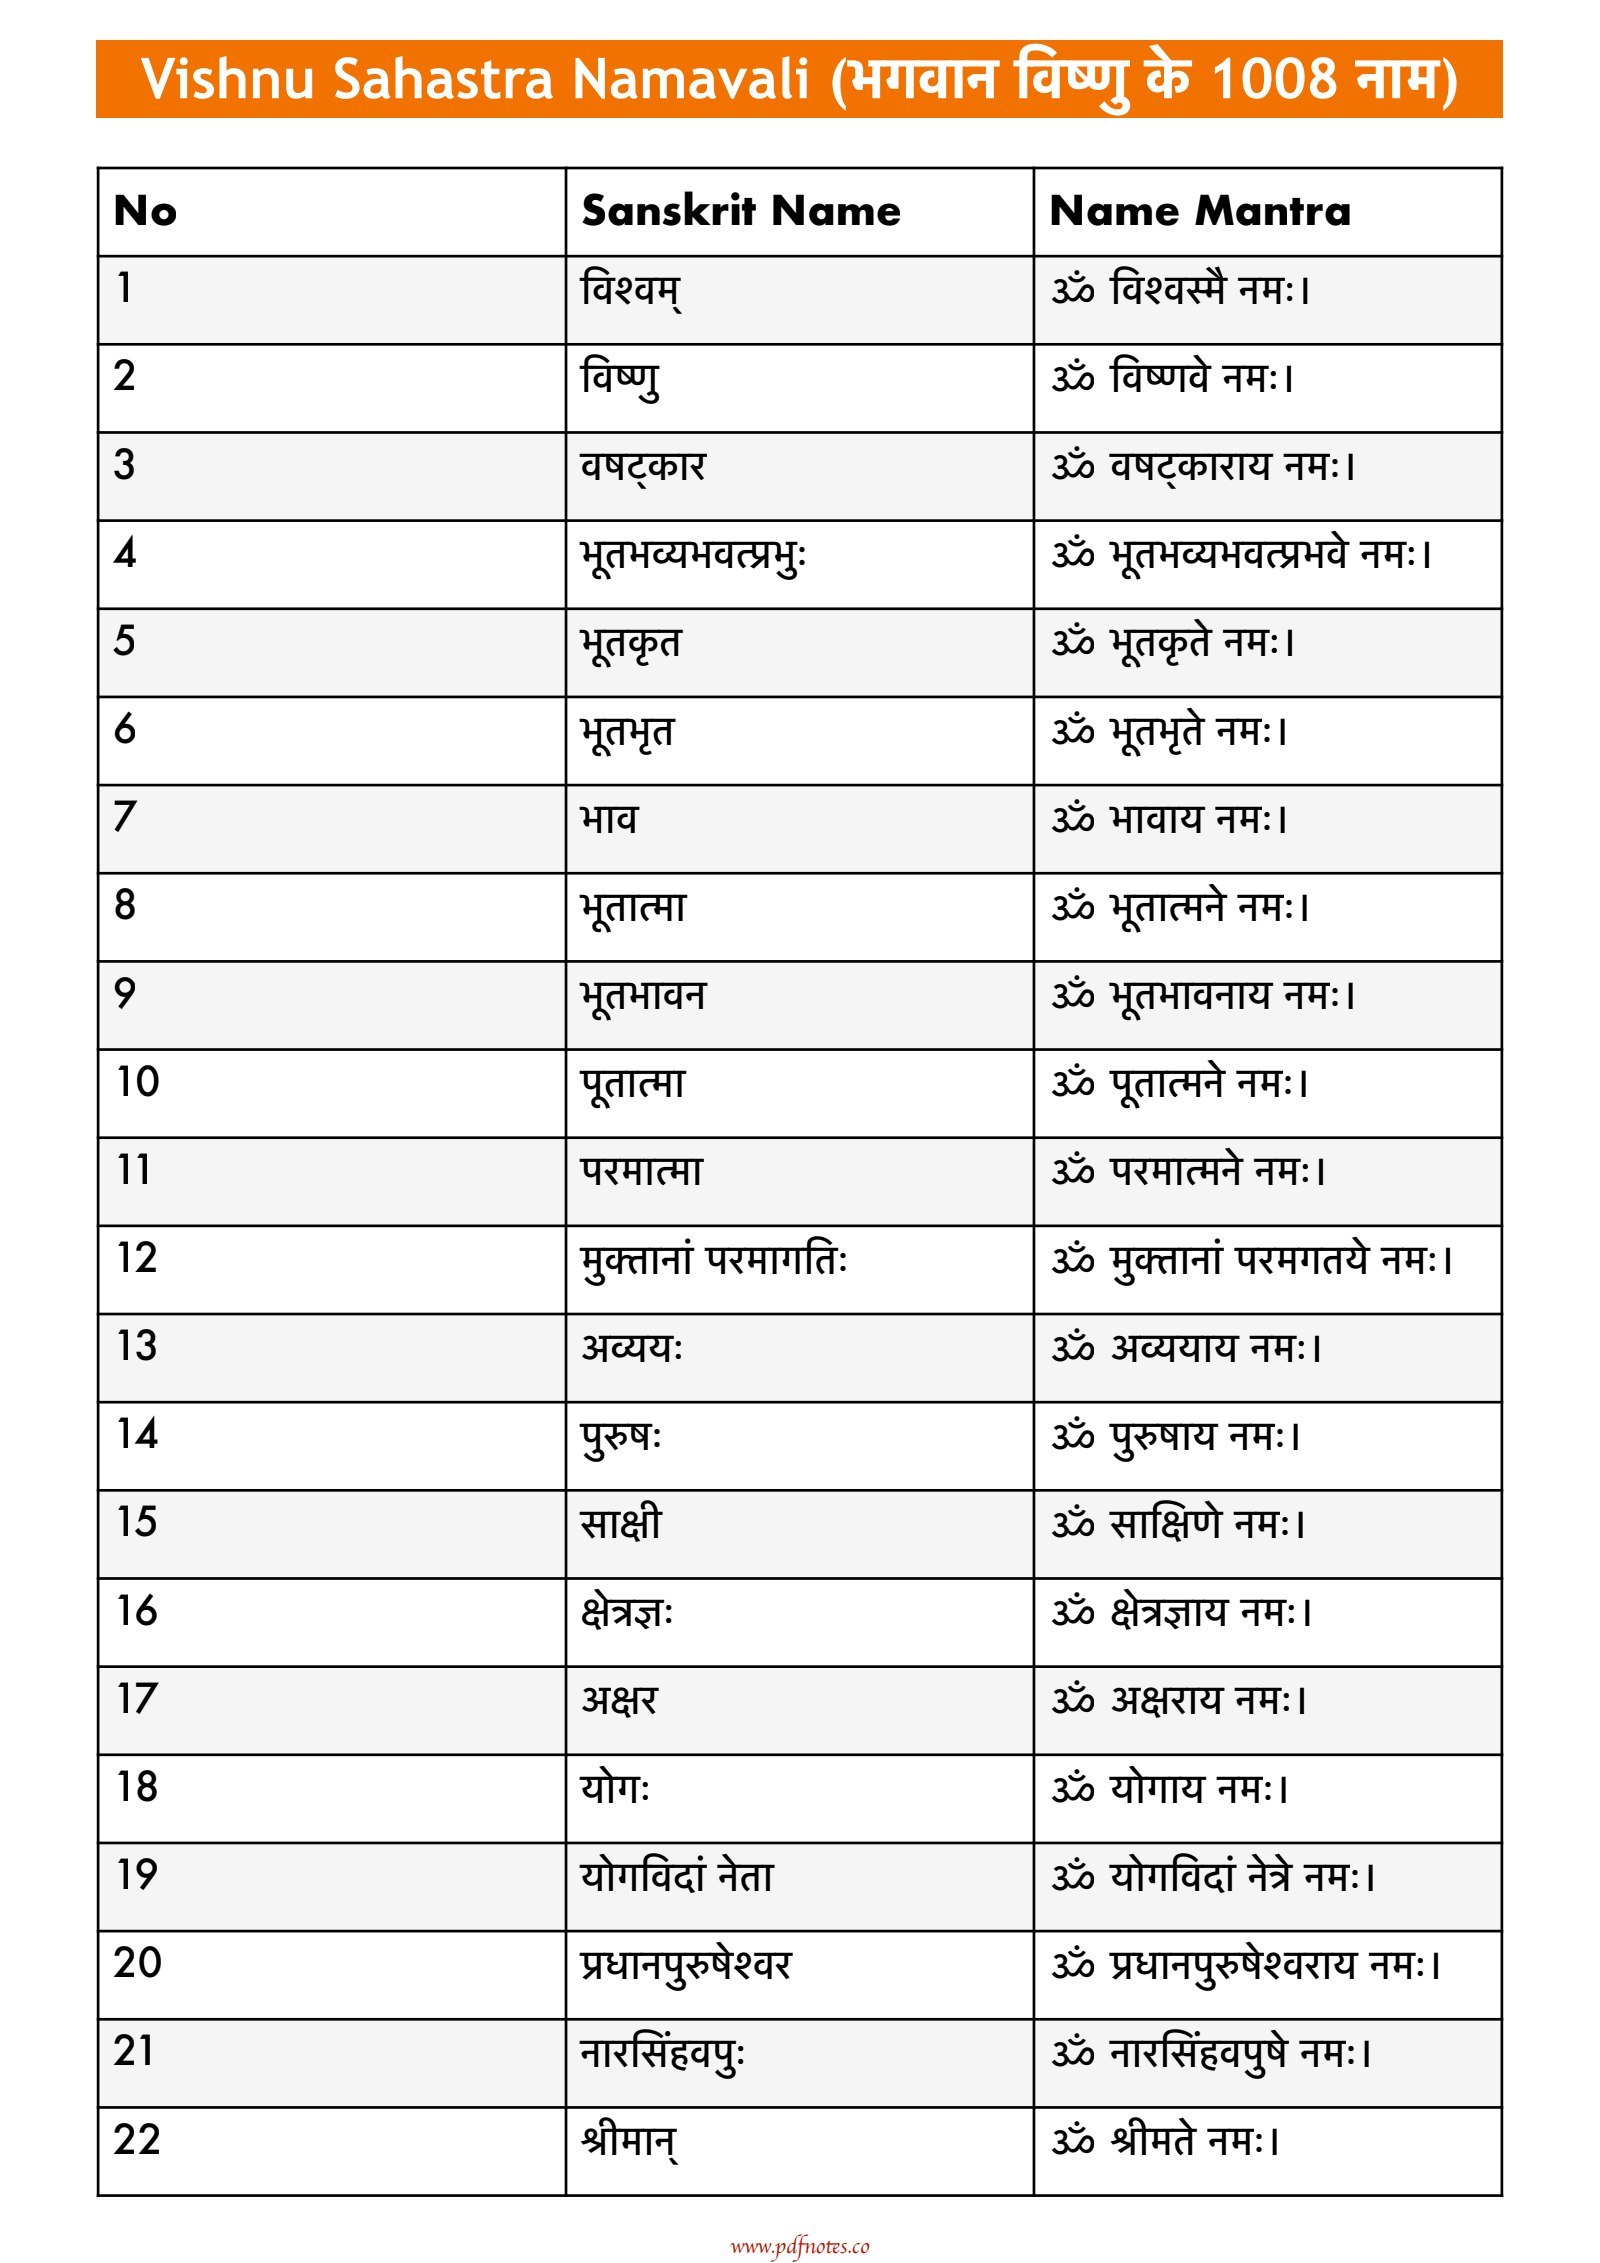 Vishnu Sahastra Namavali PDF: 1008 Names of Lord Vishnu